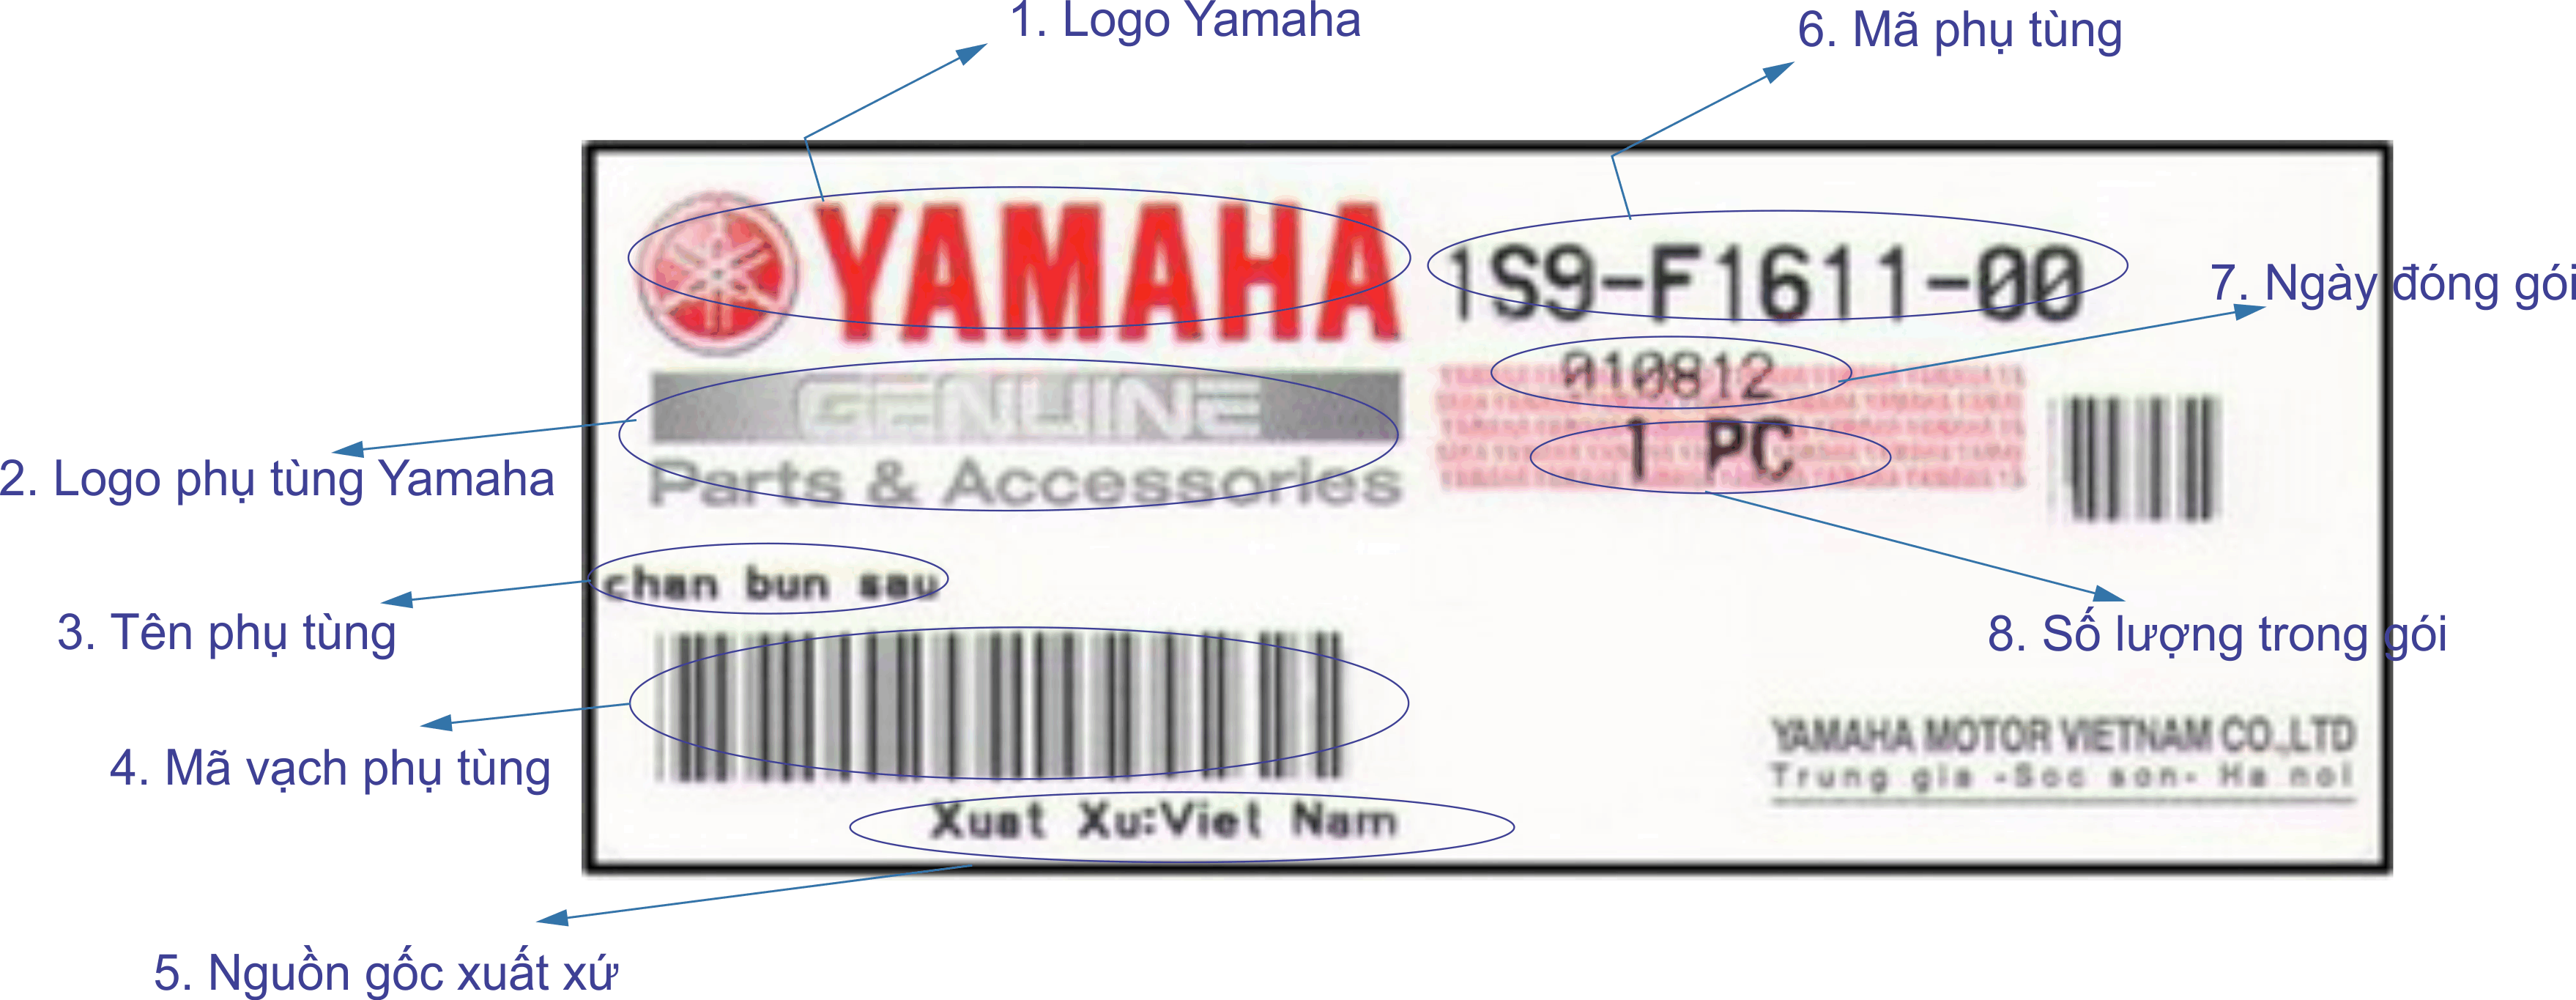 Tem phụ tùng Yamaha chính hãng